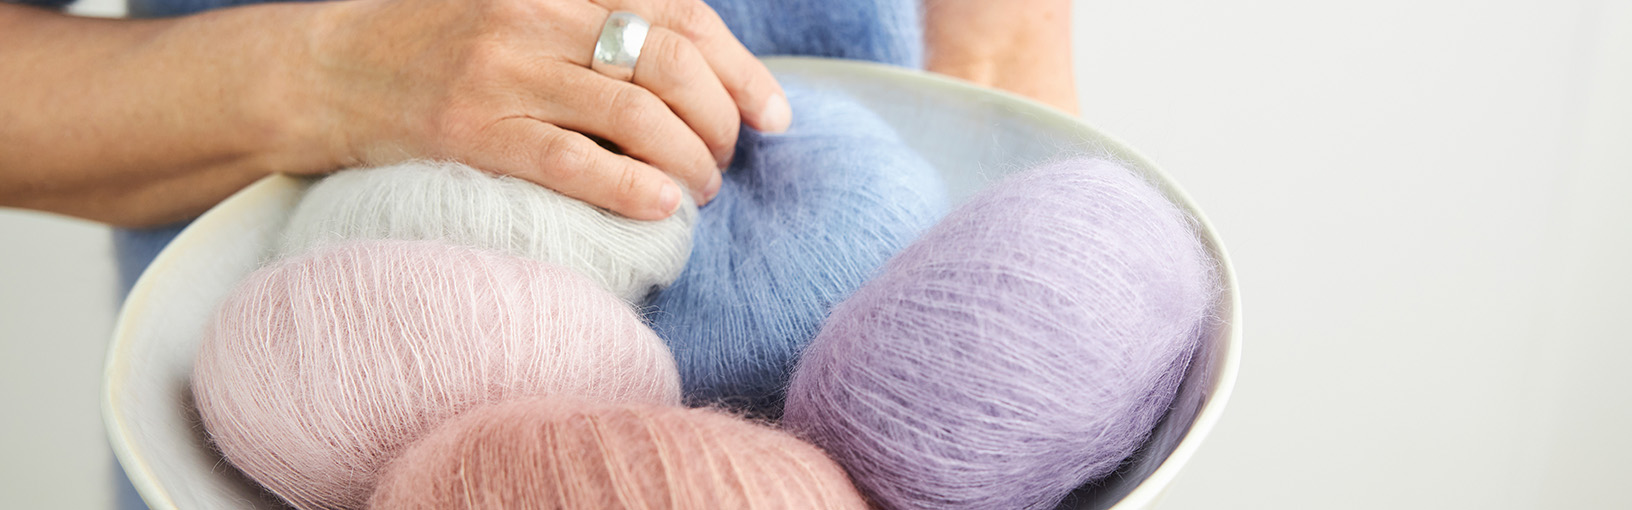 Garn af høj kvalitet til strikning, hækling og filtning LANA GROSSA<br> uld & garn | Lace